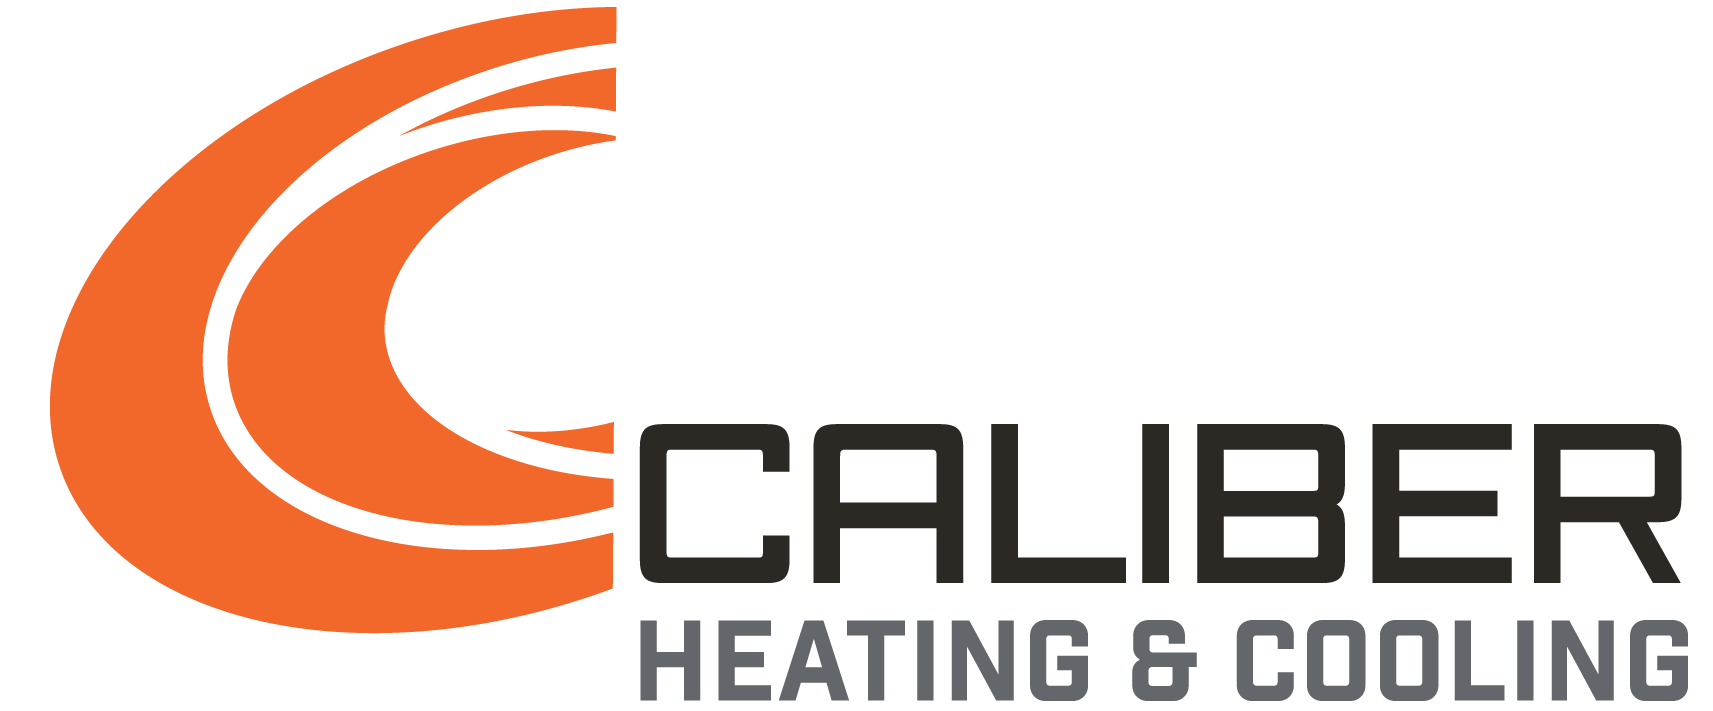 Caliber Heating & Cooling LLC | Logo